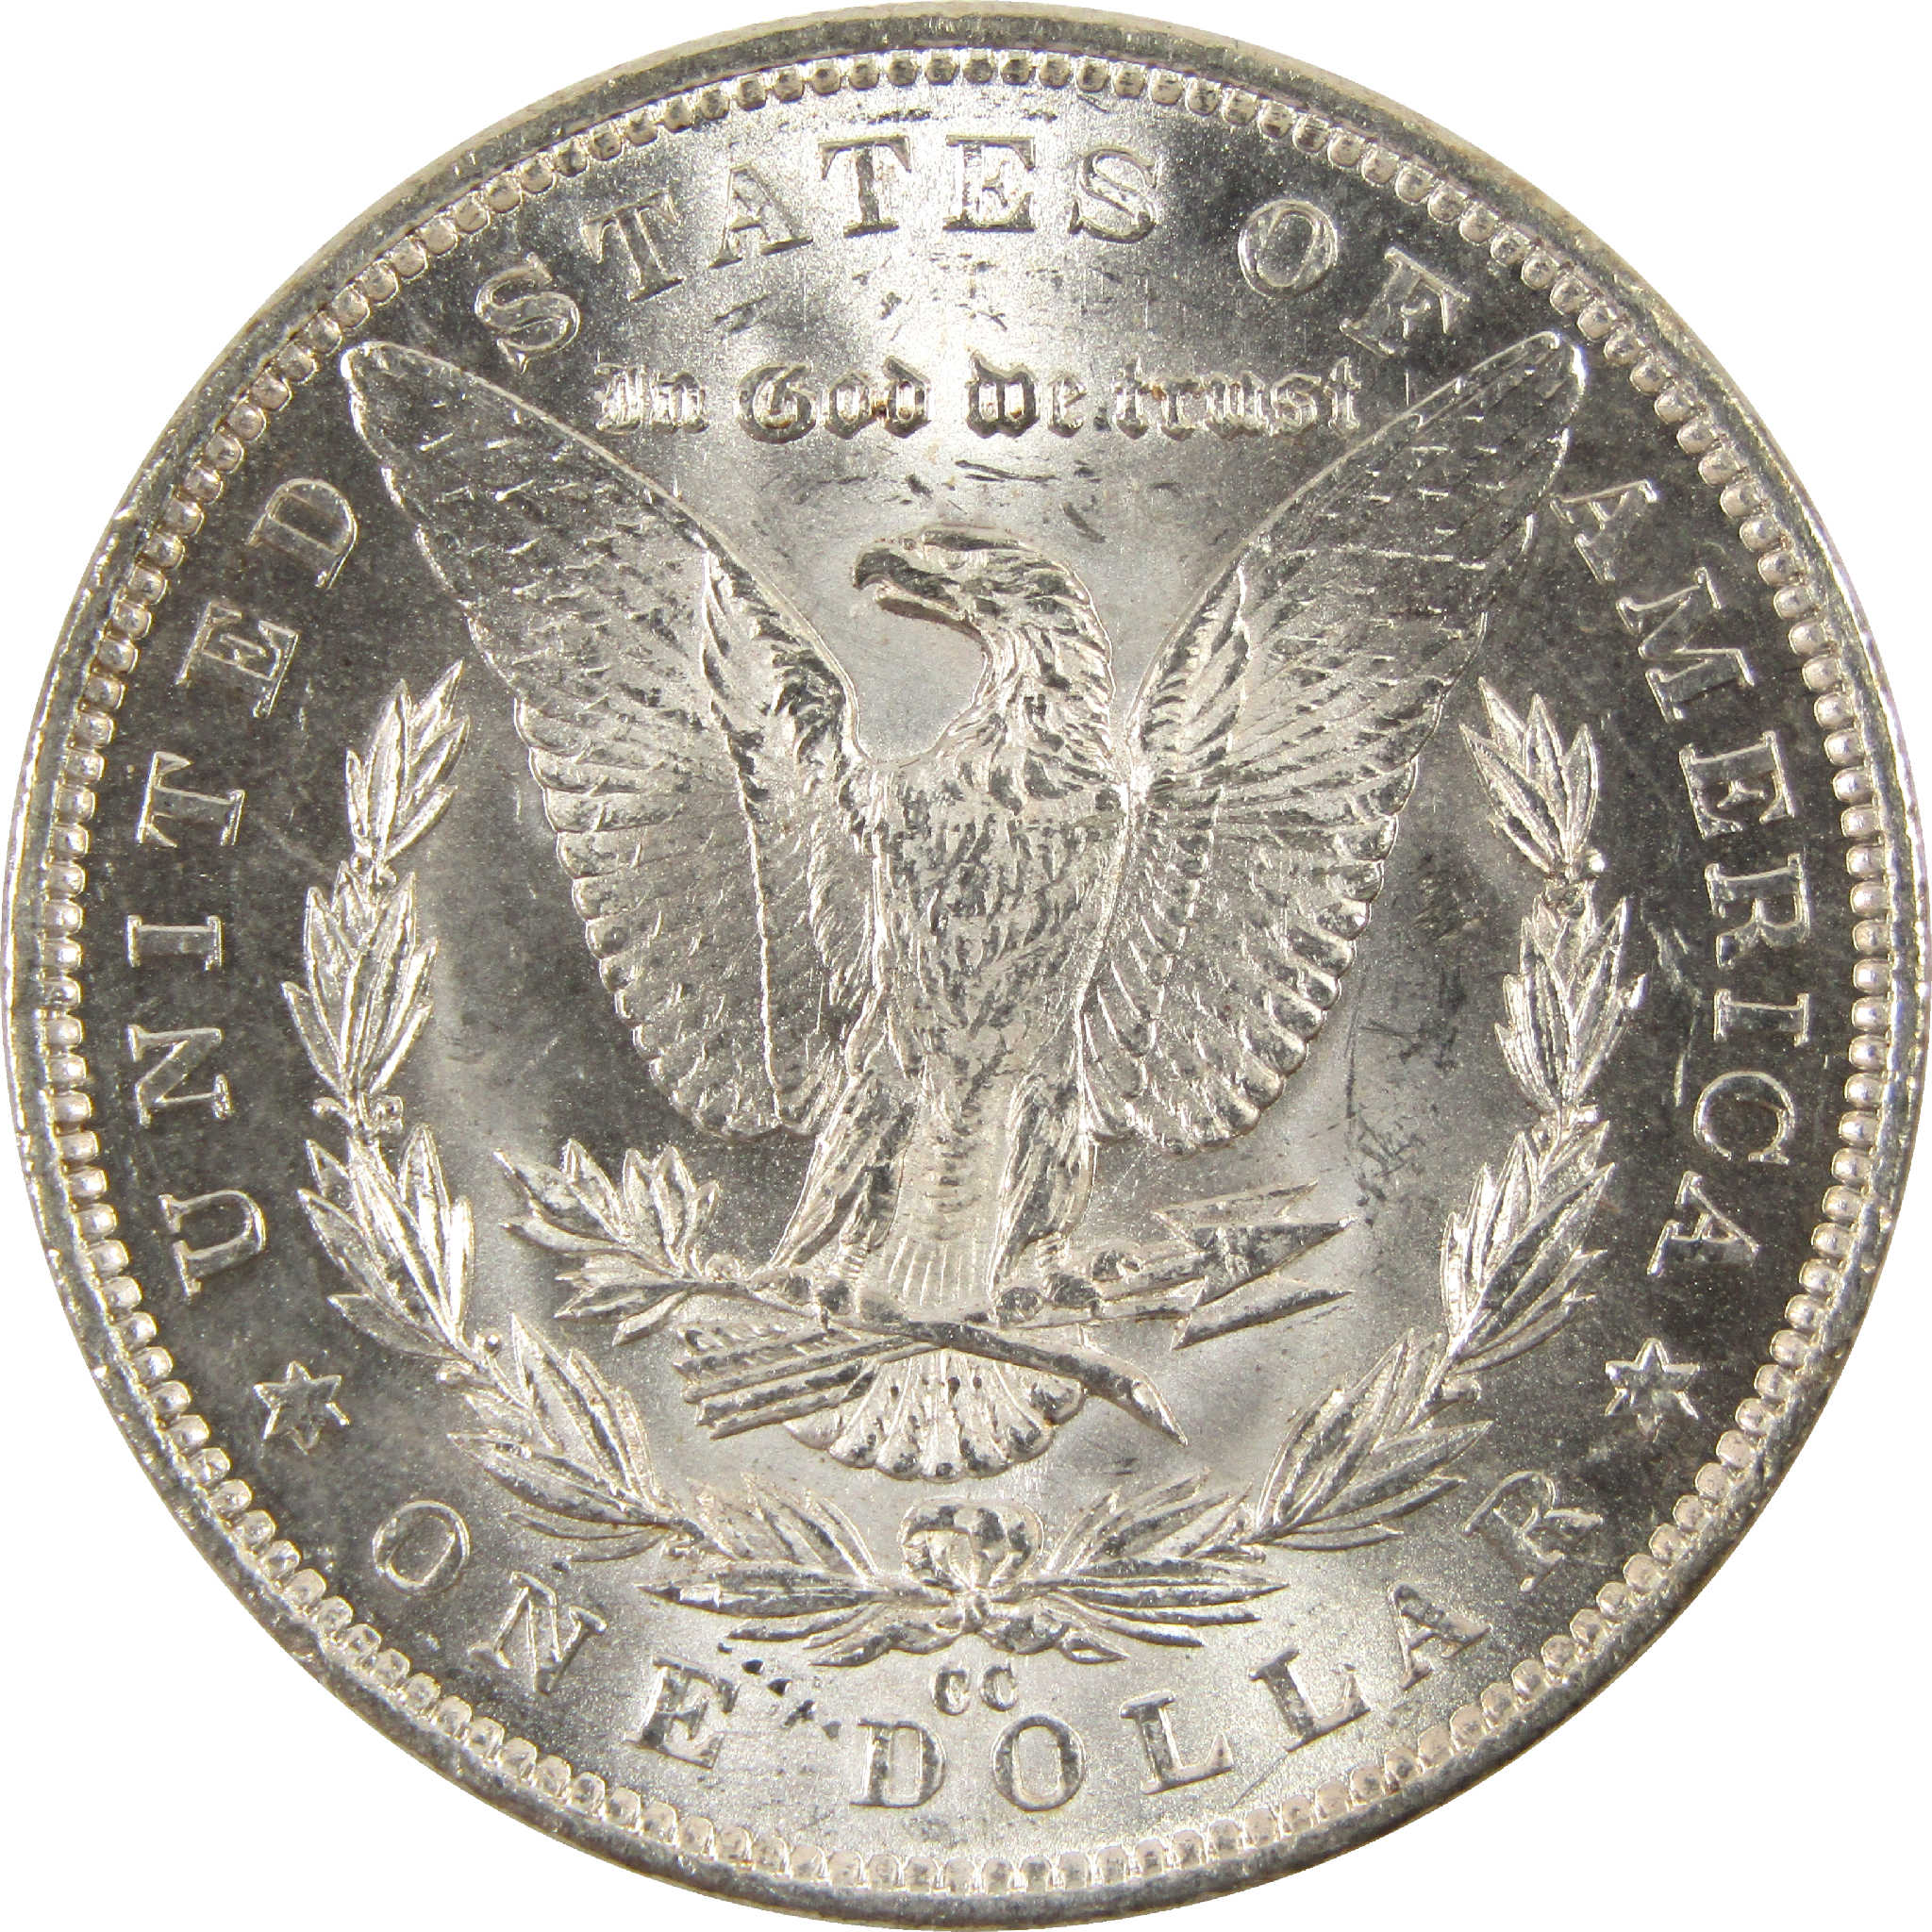 1891 CC Morgan Dollar Uncirculated Silver $1 Coin SKU:CPC6259 - Morgan coin - Morgan silver dollar - Morgan silver dollar for sale - Profile Coins &amp; Collectibles